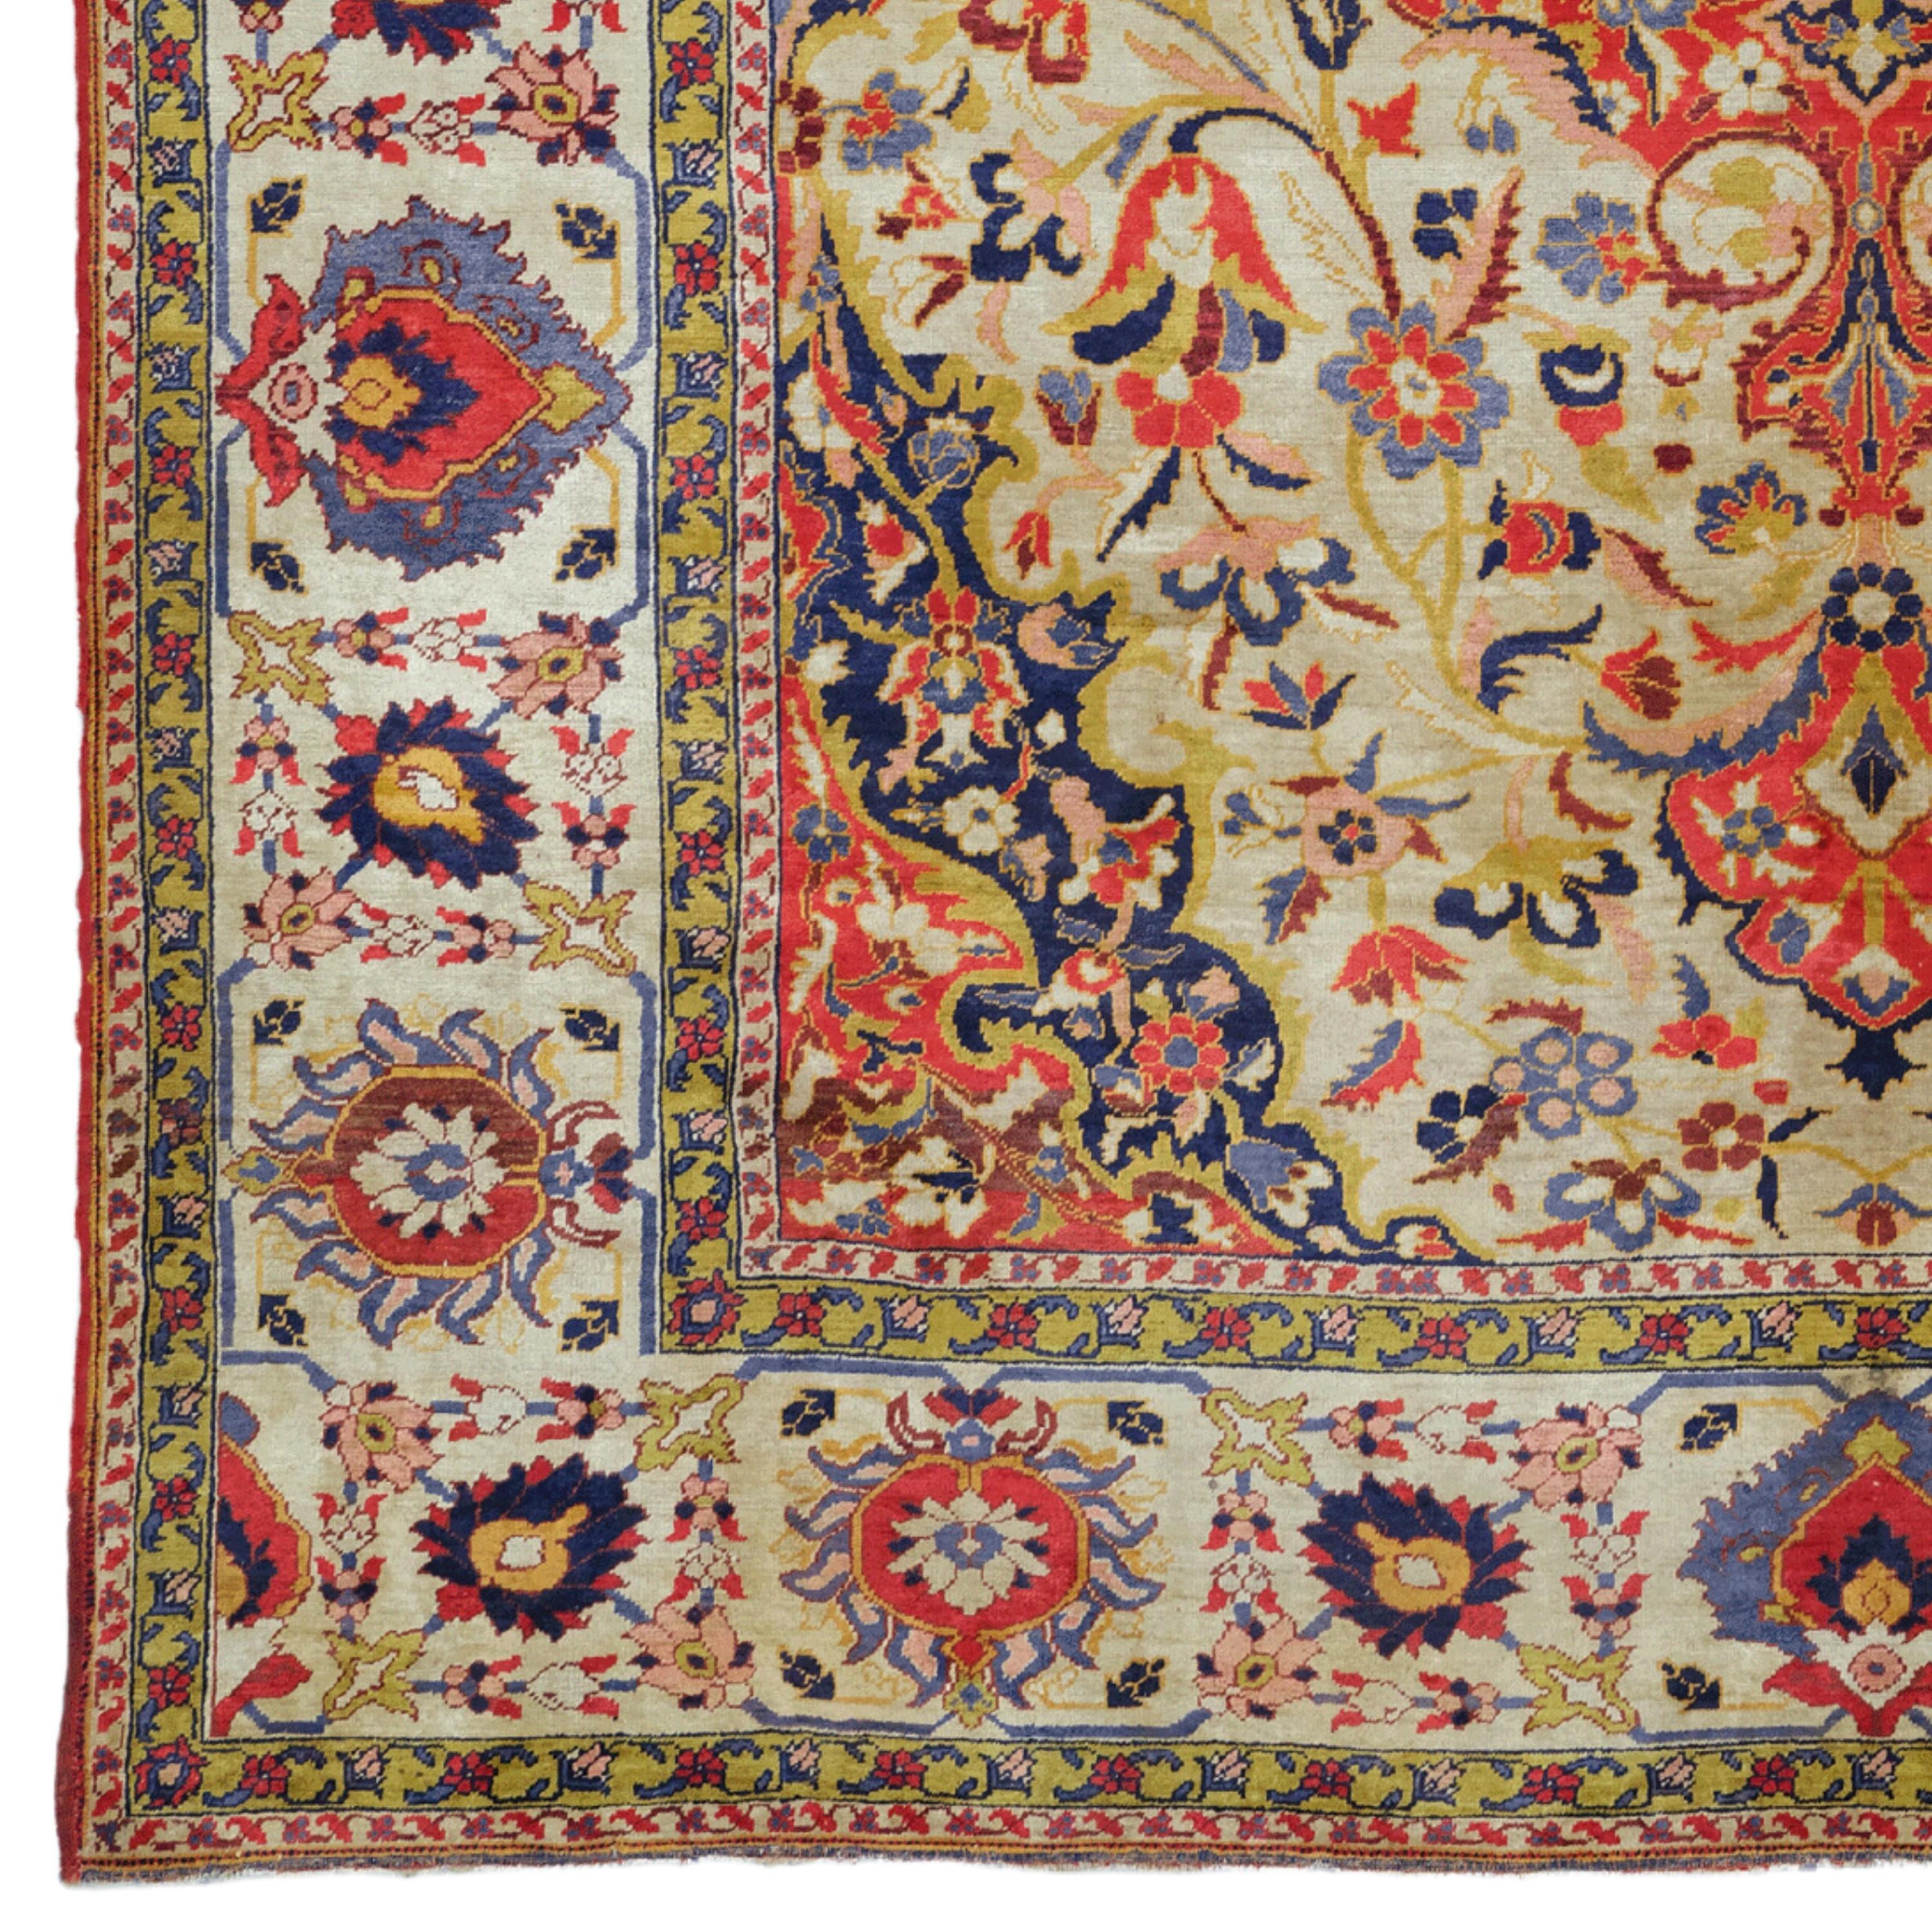 Handgeknüpft in der Türkei zwischen 1880-1890, Antiker Sivas Seidenteppich

Dieser seltene Sivas-Teppich aus Seide aus dem 19. Jahrhundert repräsentiert die exquisite Kunst und das Handwerk der osmanischen Zeit. Mit seiner reichhaltigen Farbpalette